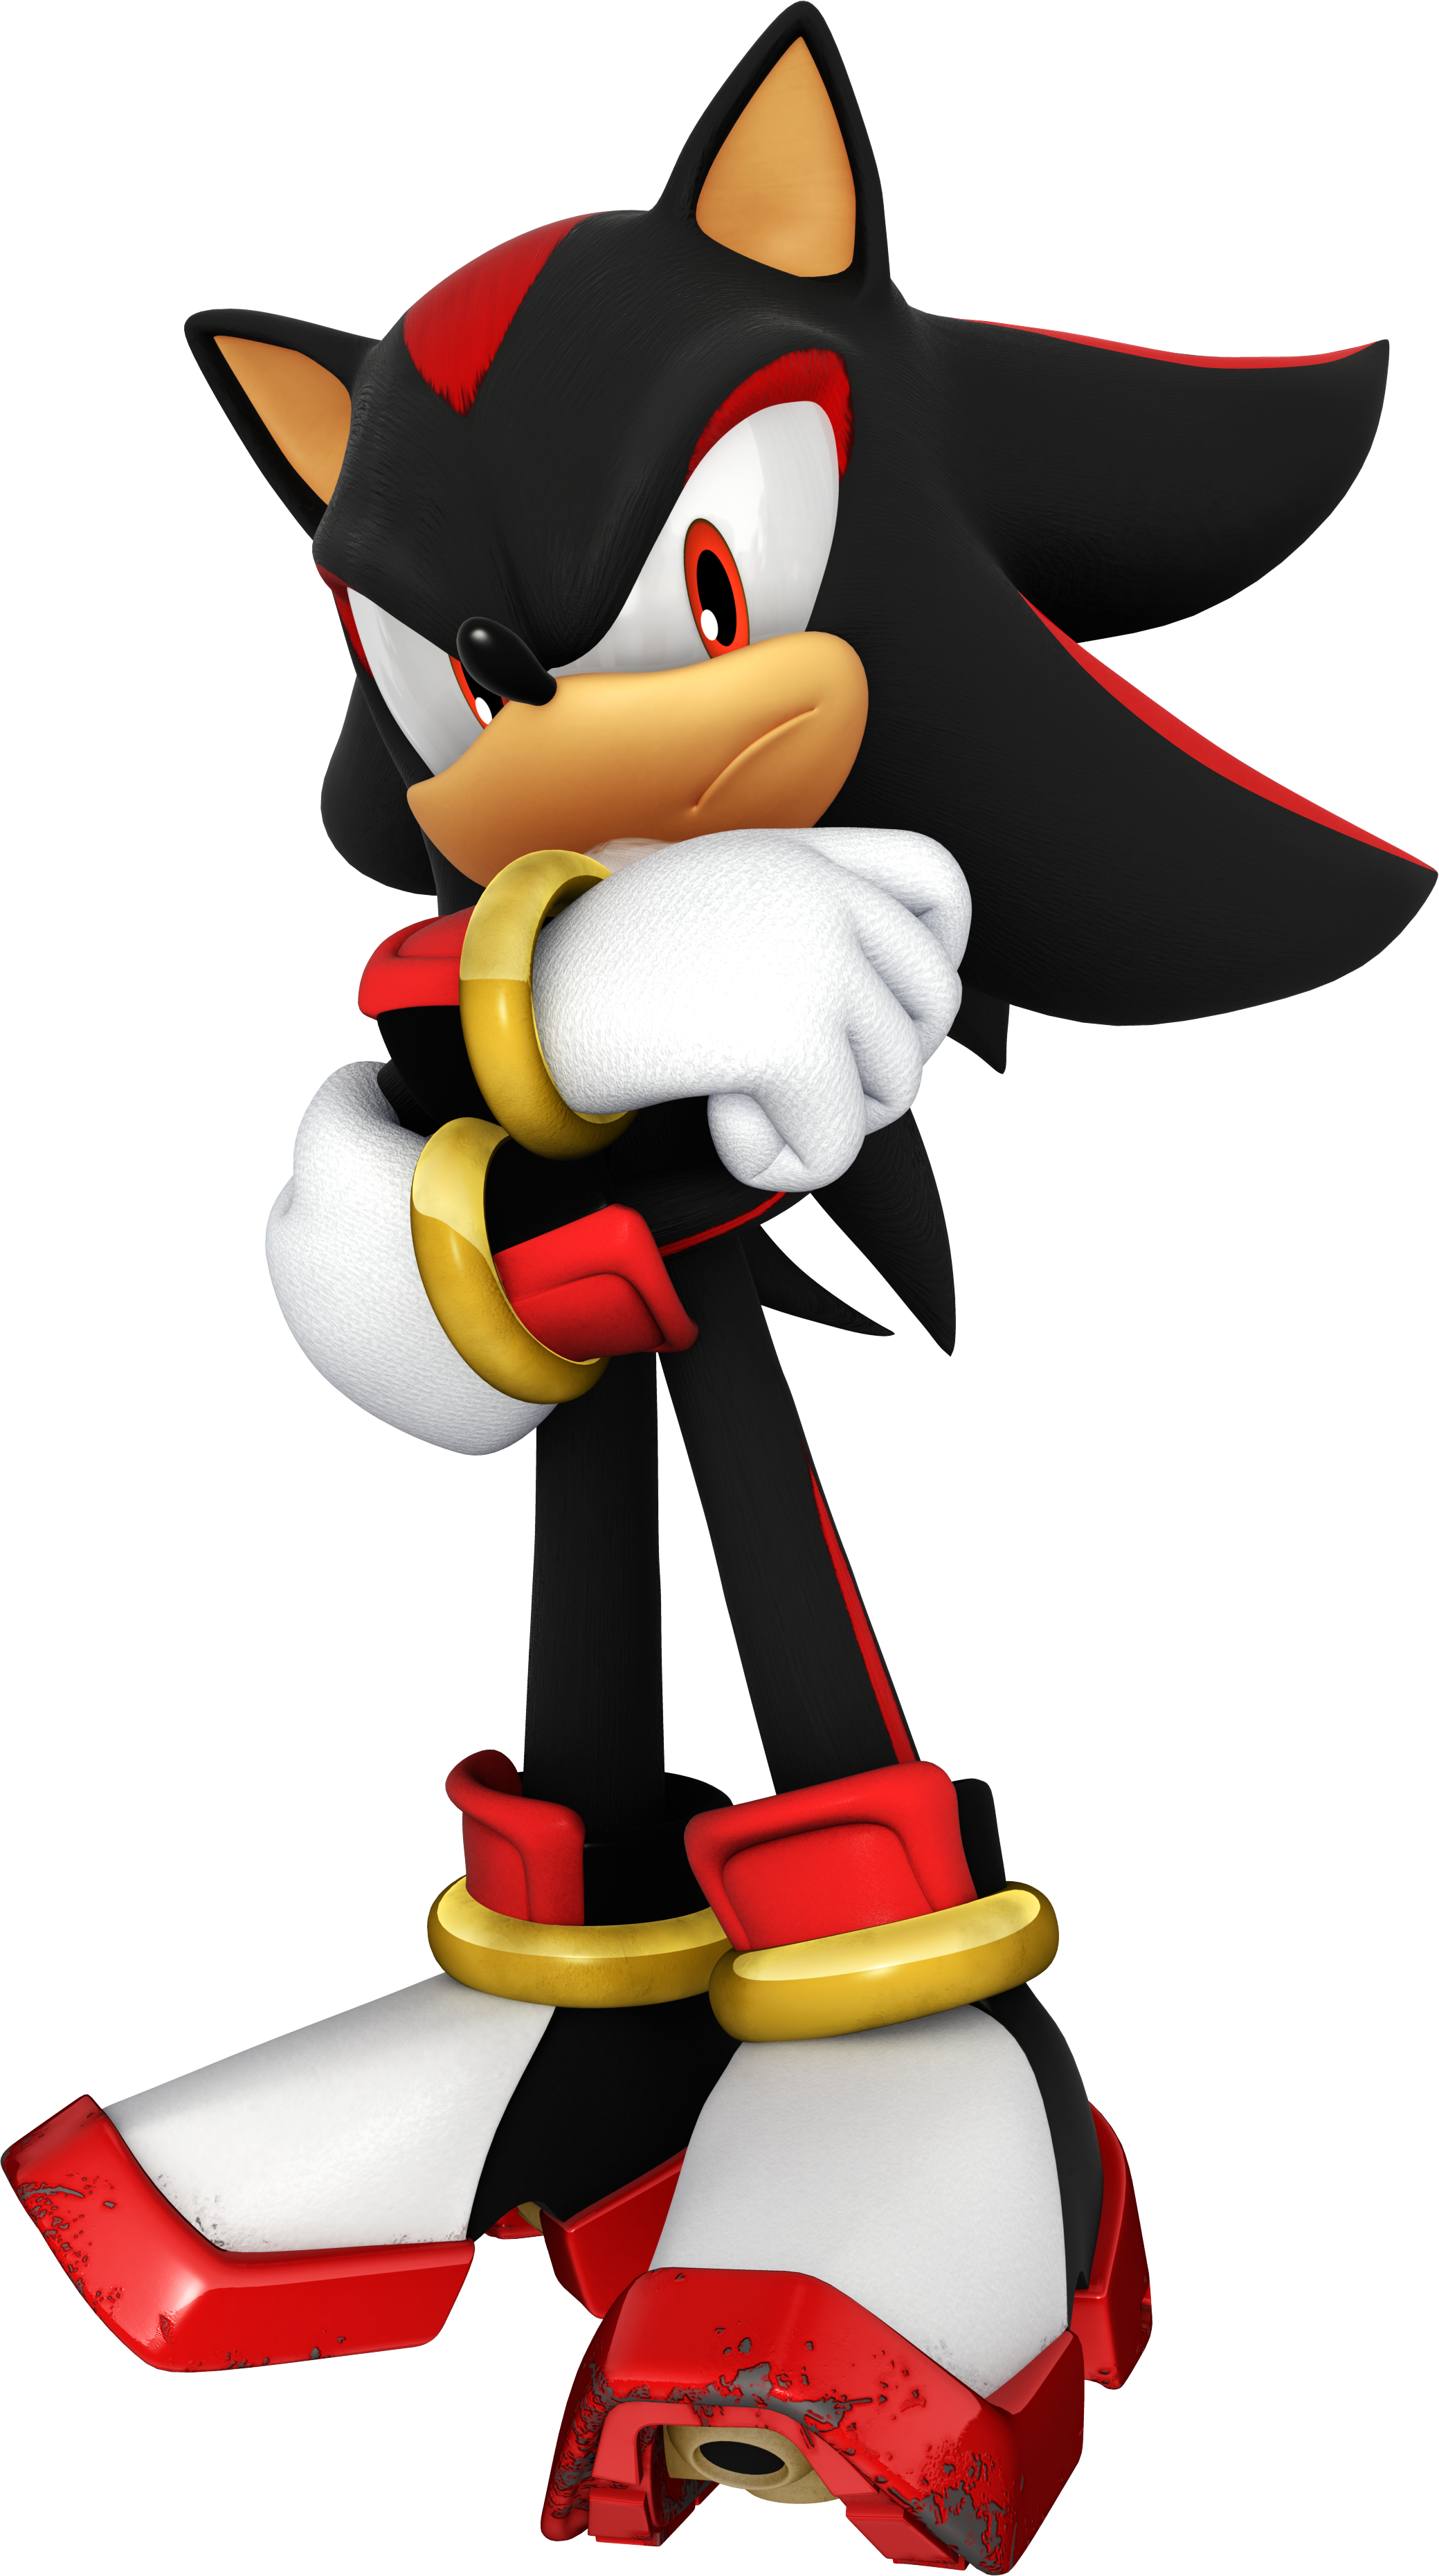 Sonic VS Shadow - Sonic Retro